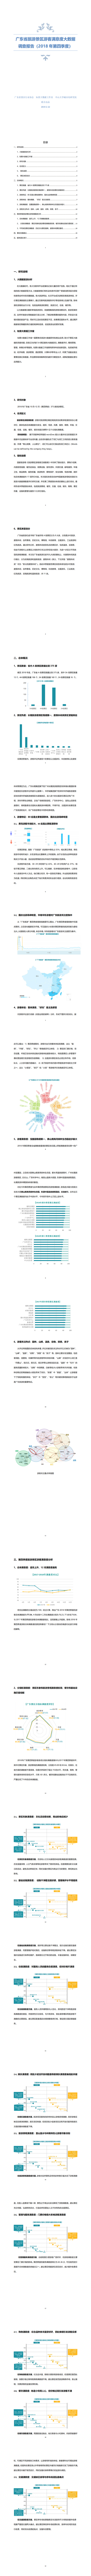 广东省旅游景区游客满意度大数据调查报告-2018年第四季度20190224_0